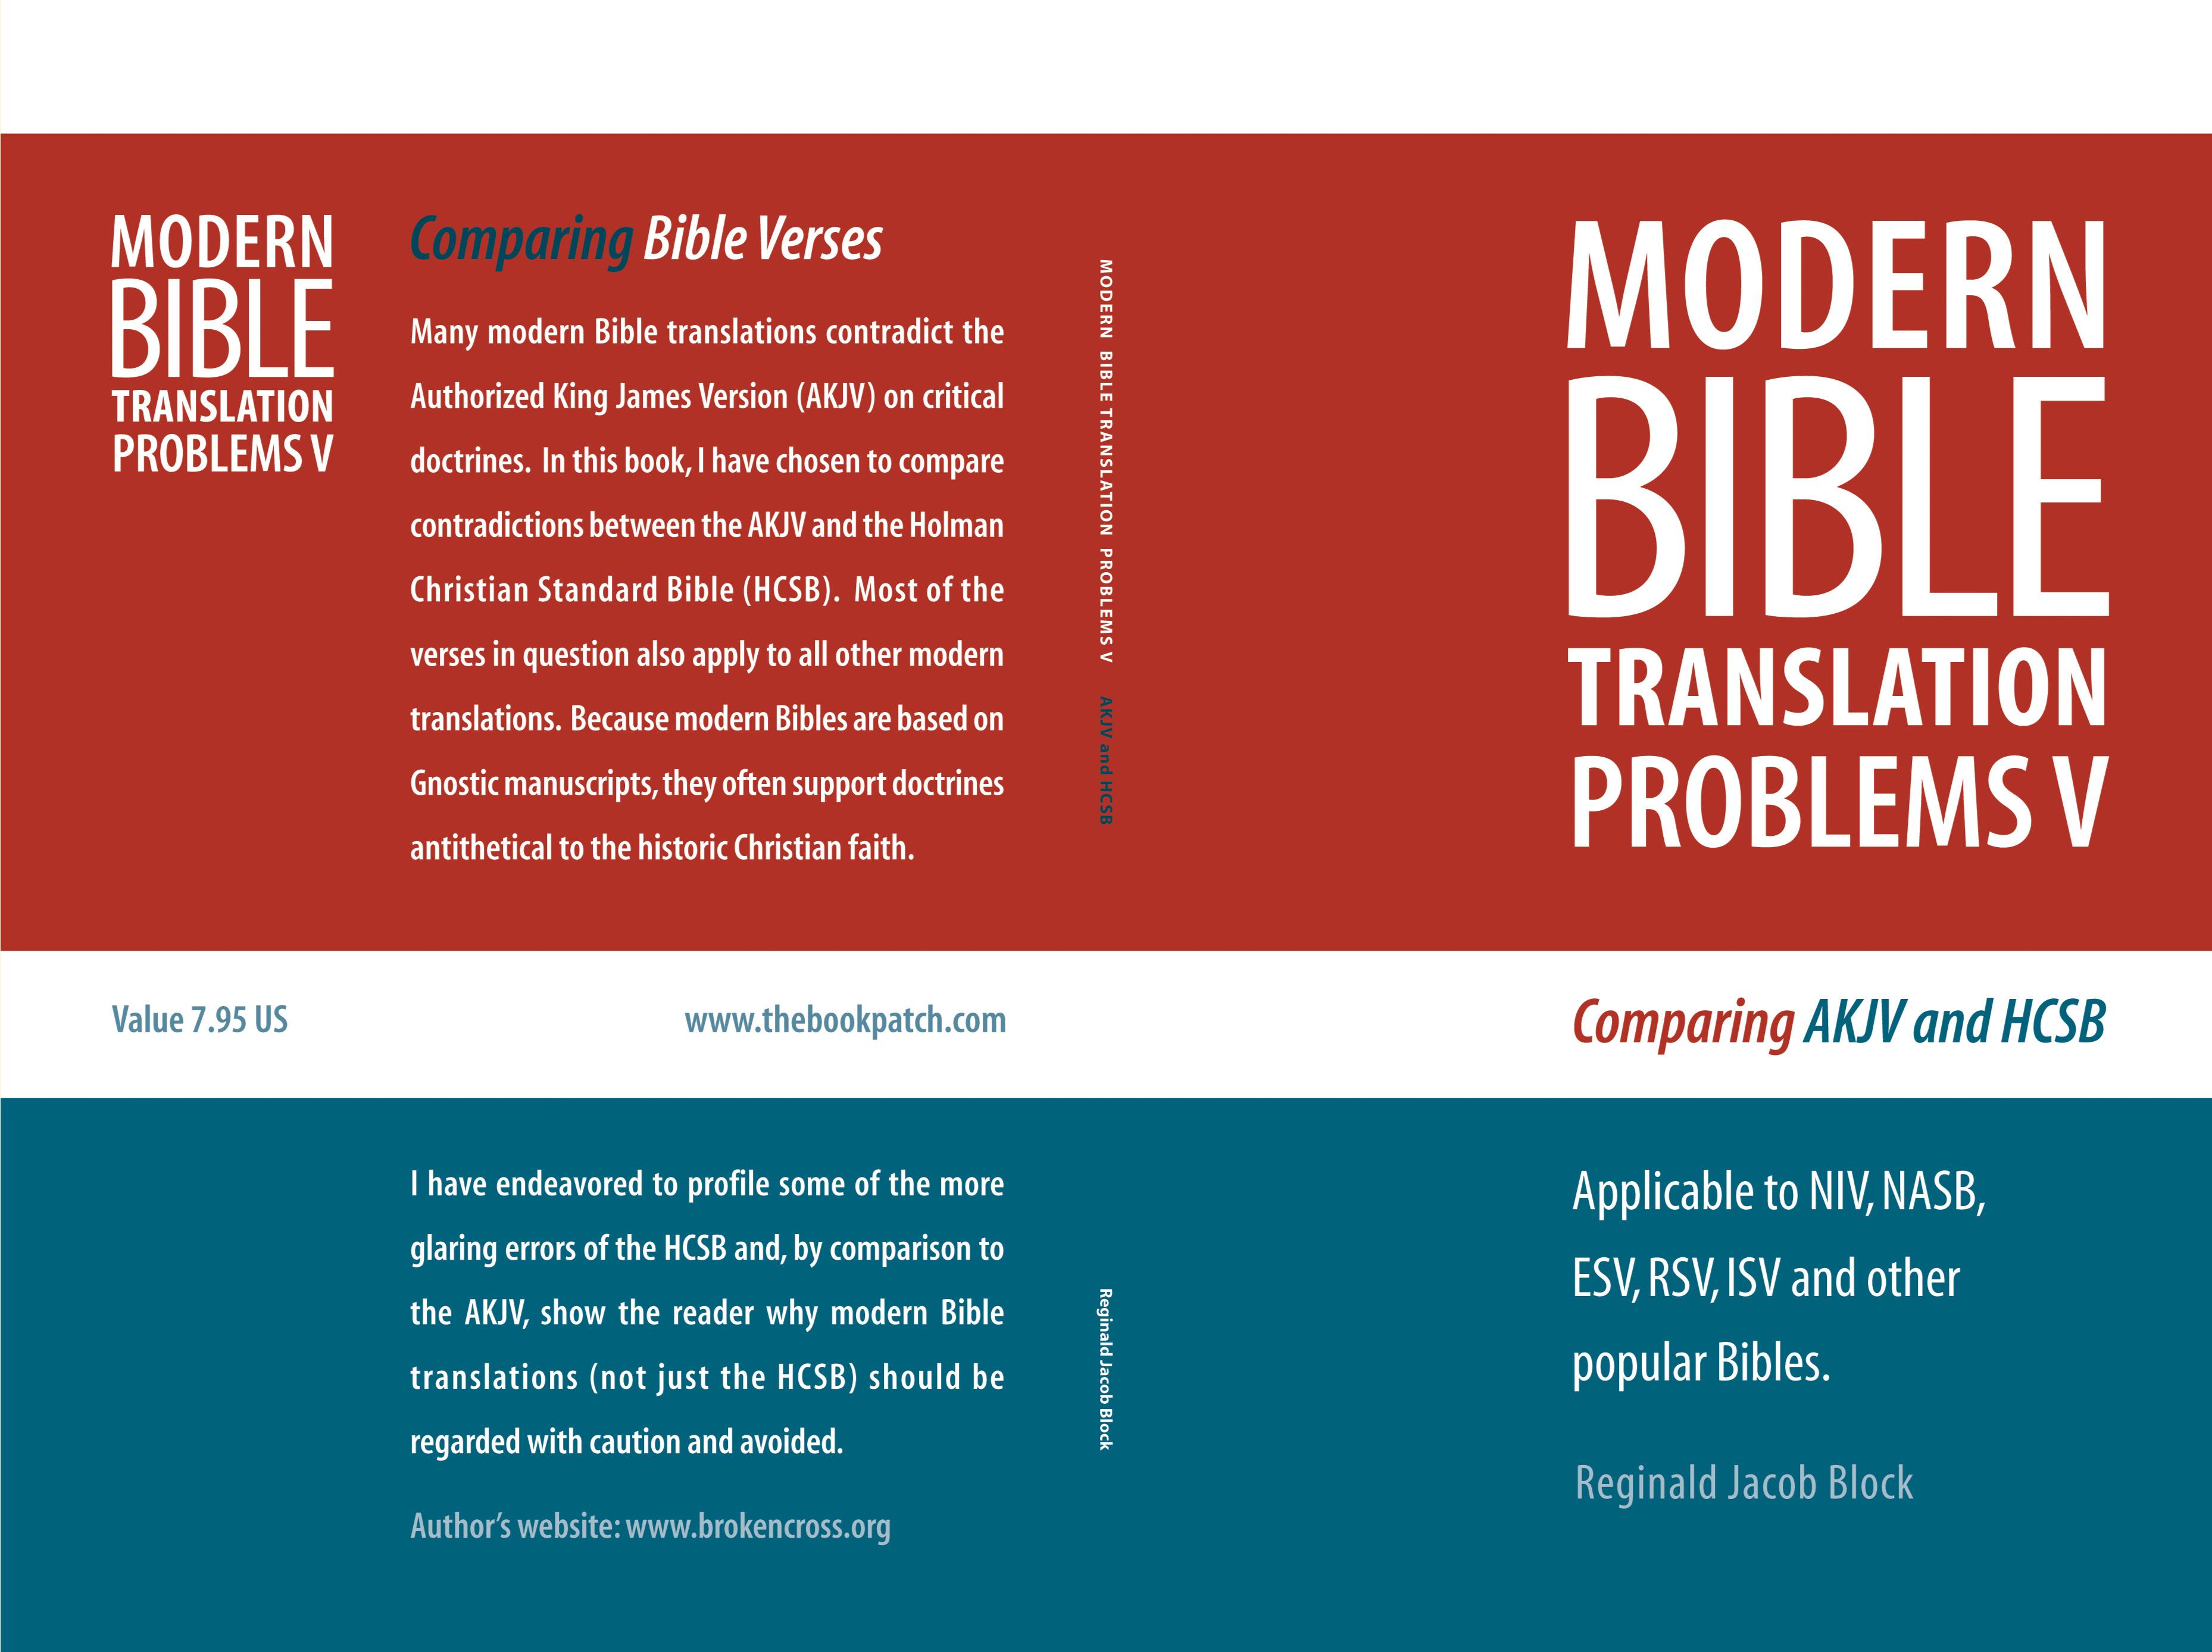 MODERN BIBLE TRANSLATION PROBLEMS V cover image